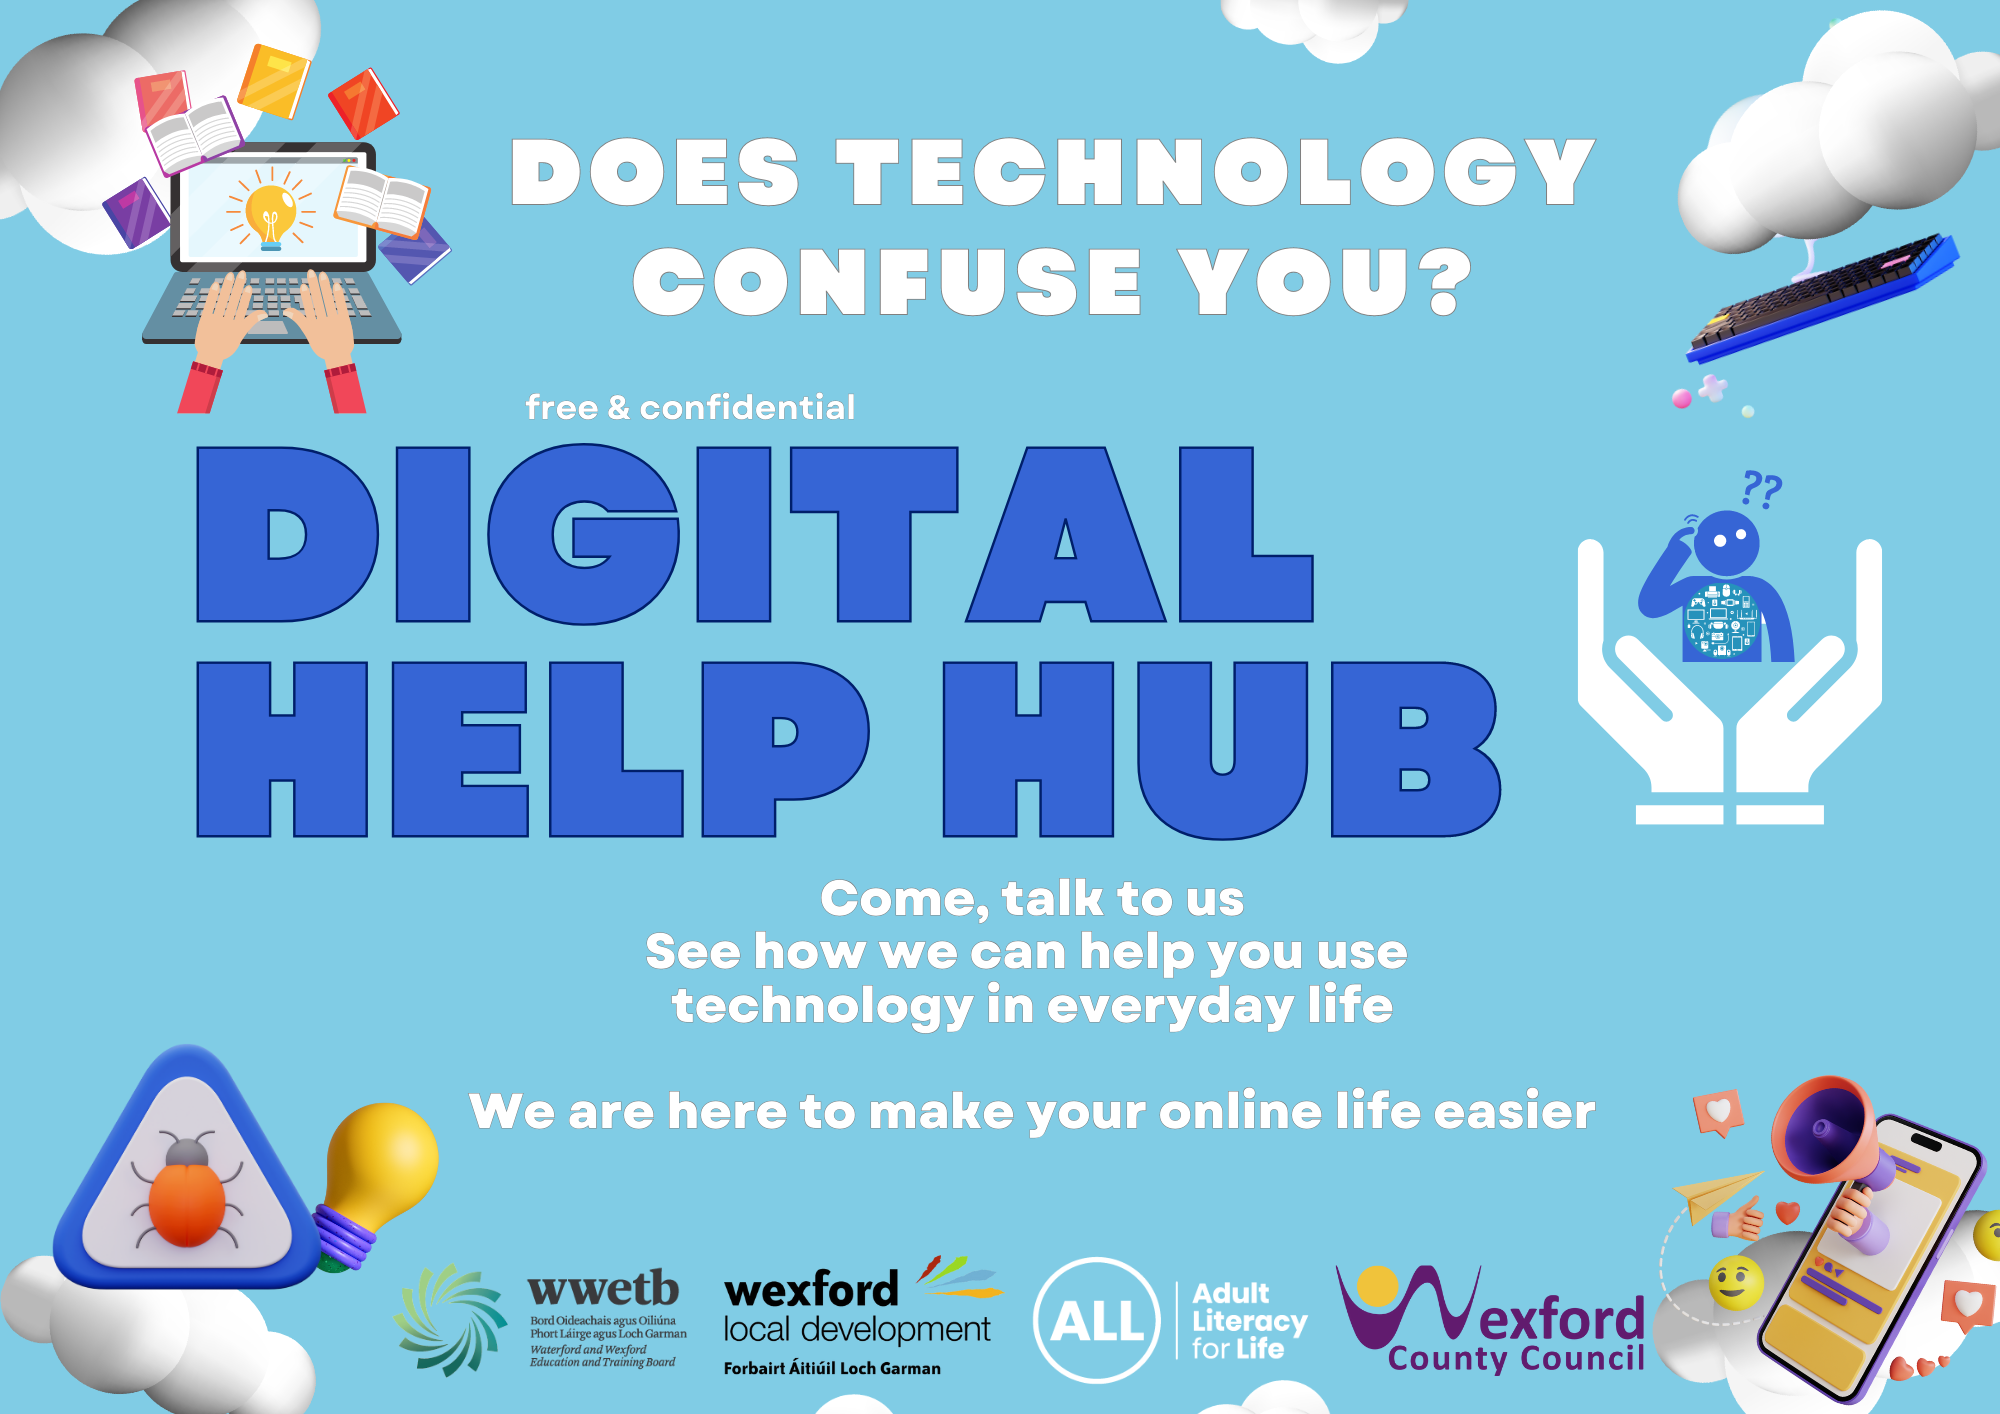 The ALL Digital Help Hub is now in Enniscorthy!